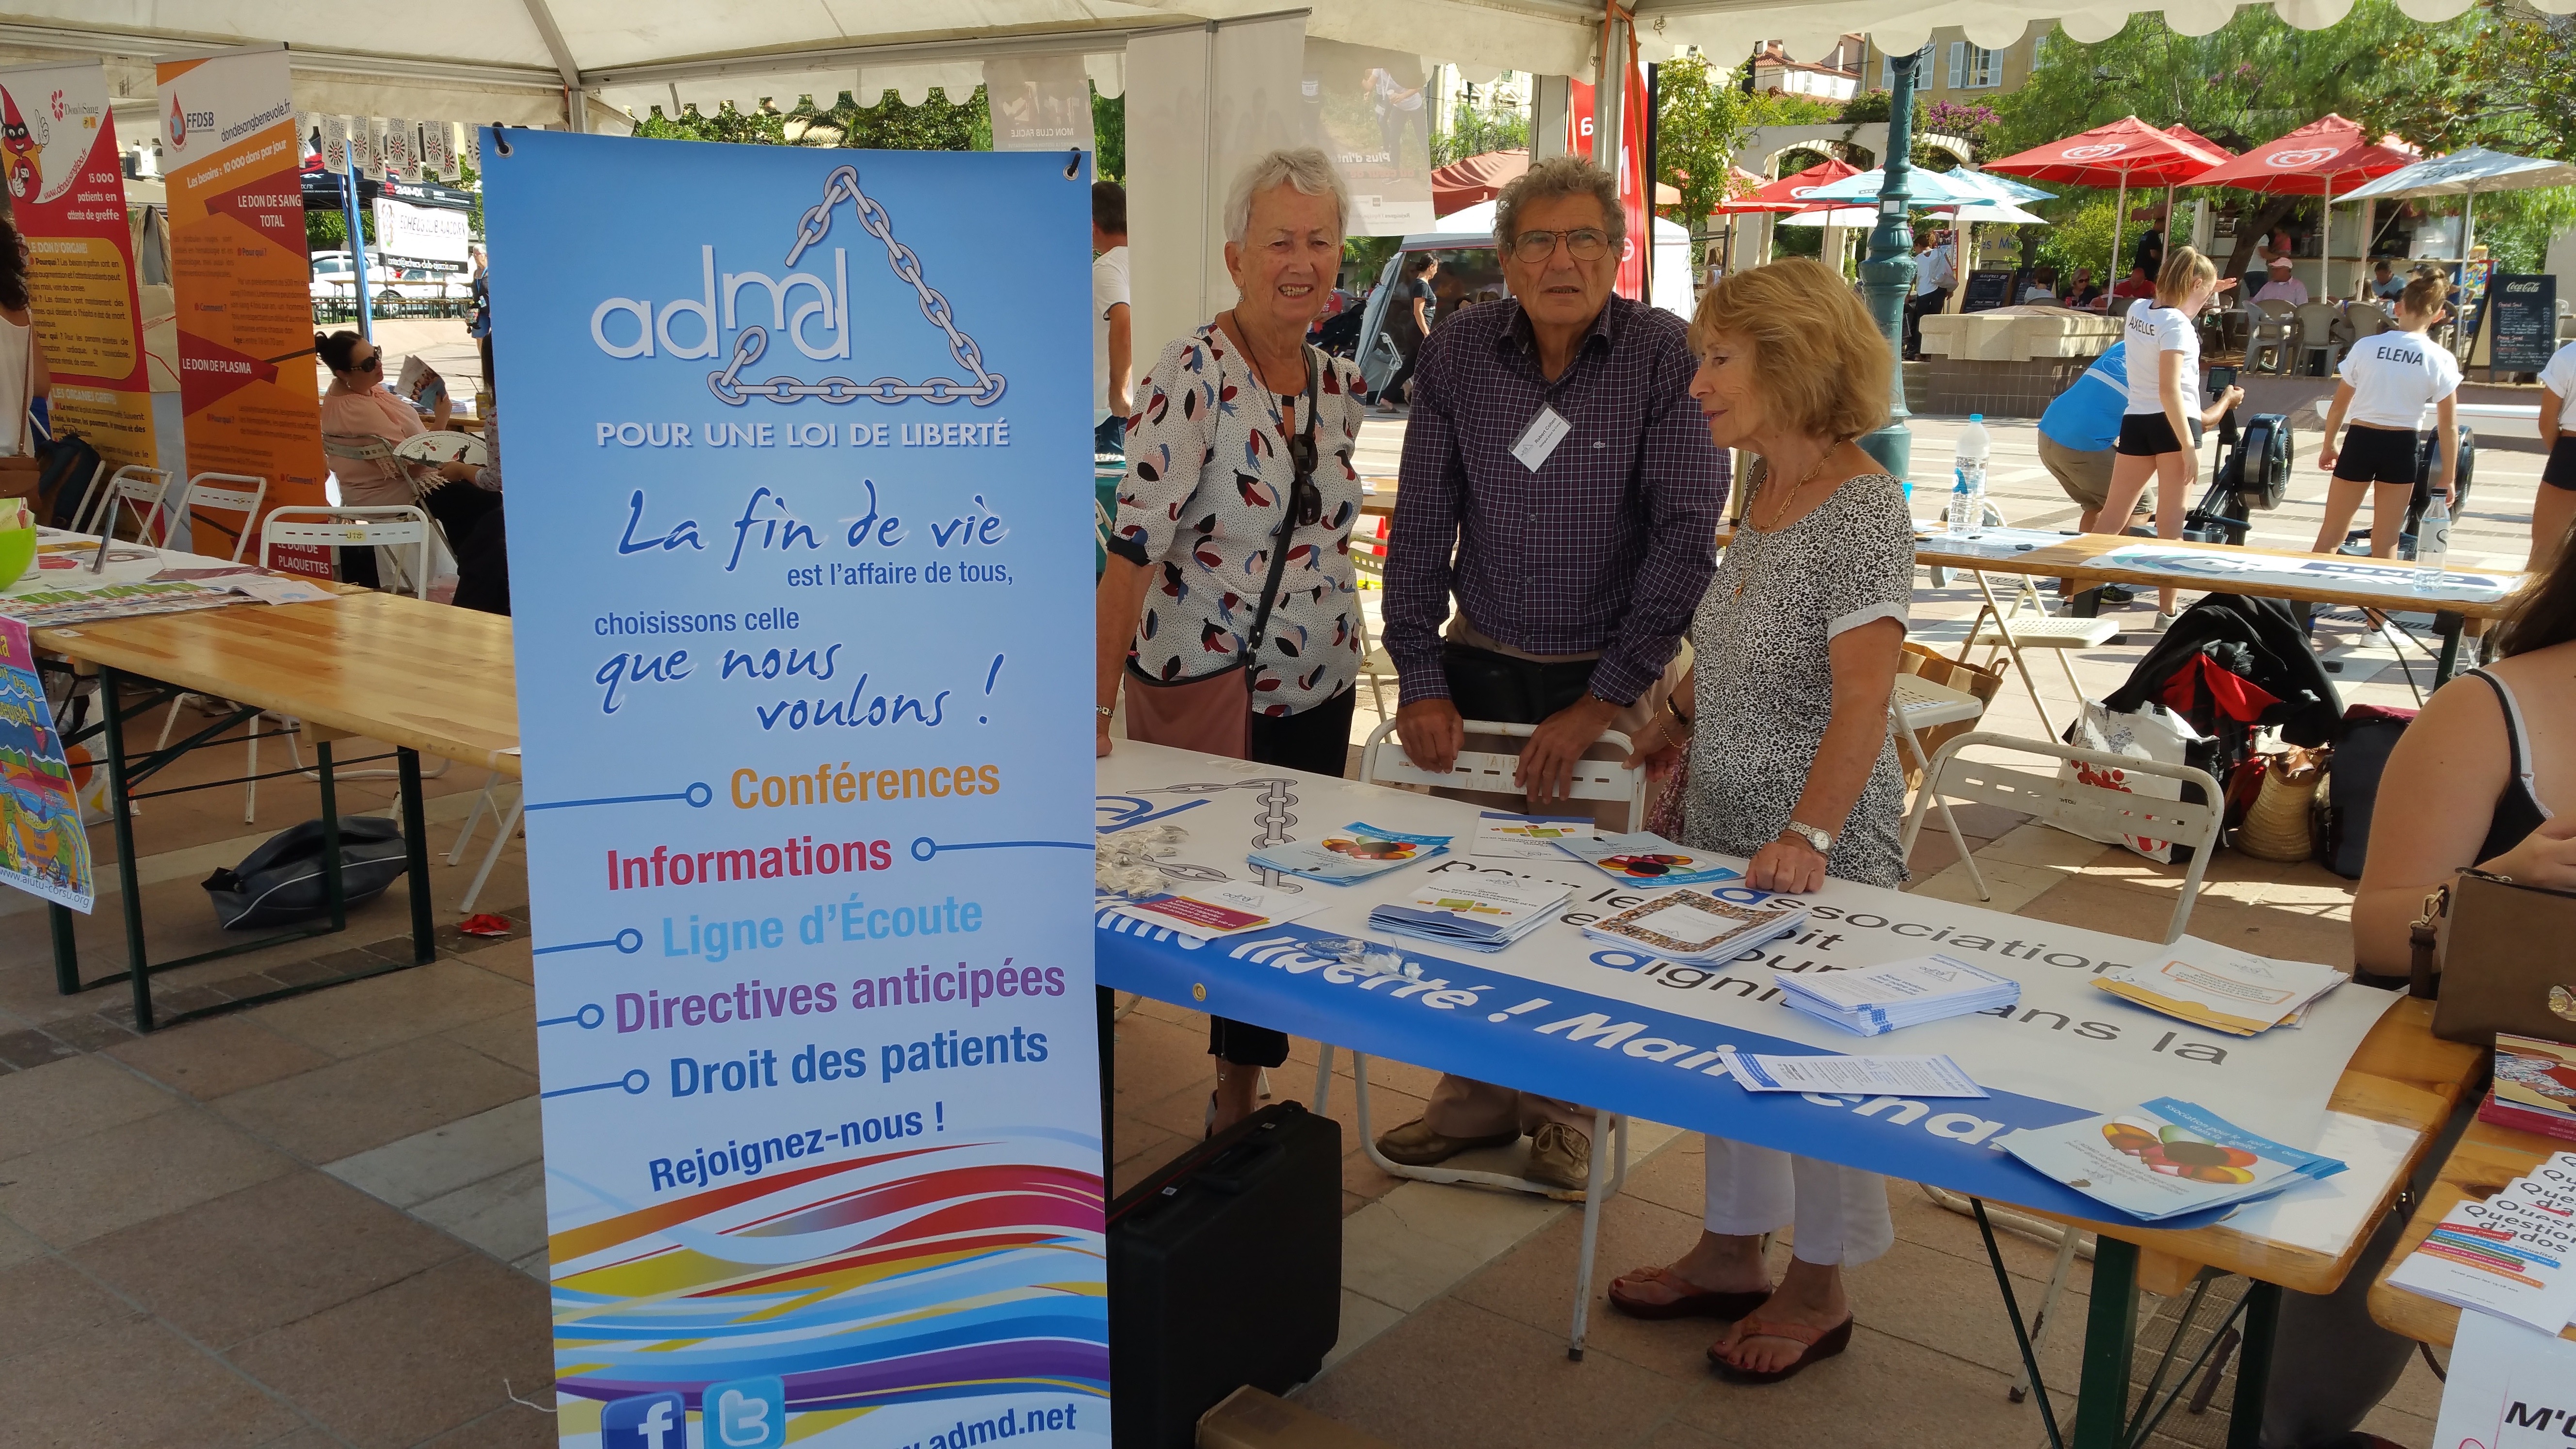 Les membres de l'ADMD de Corse. Crédit : ADMD